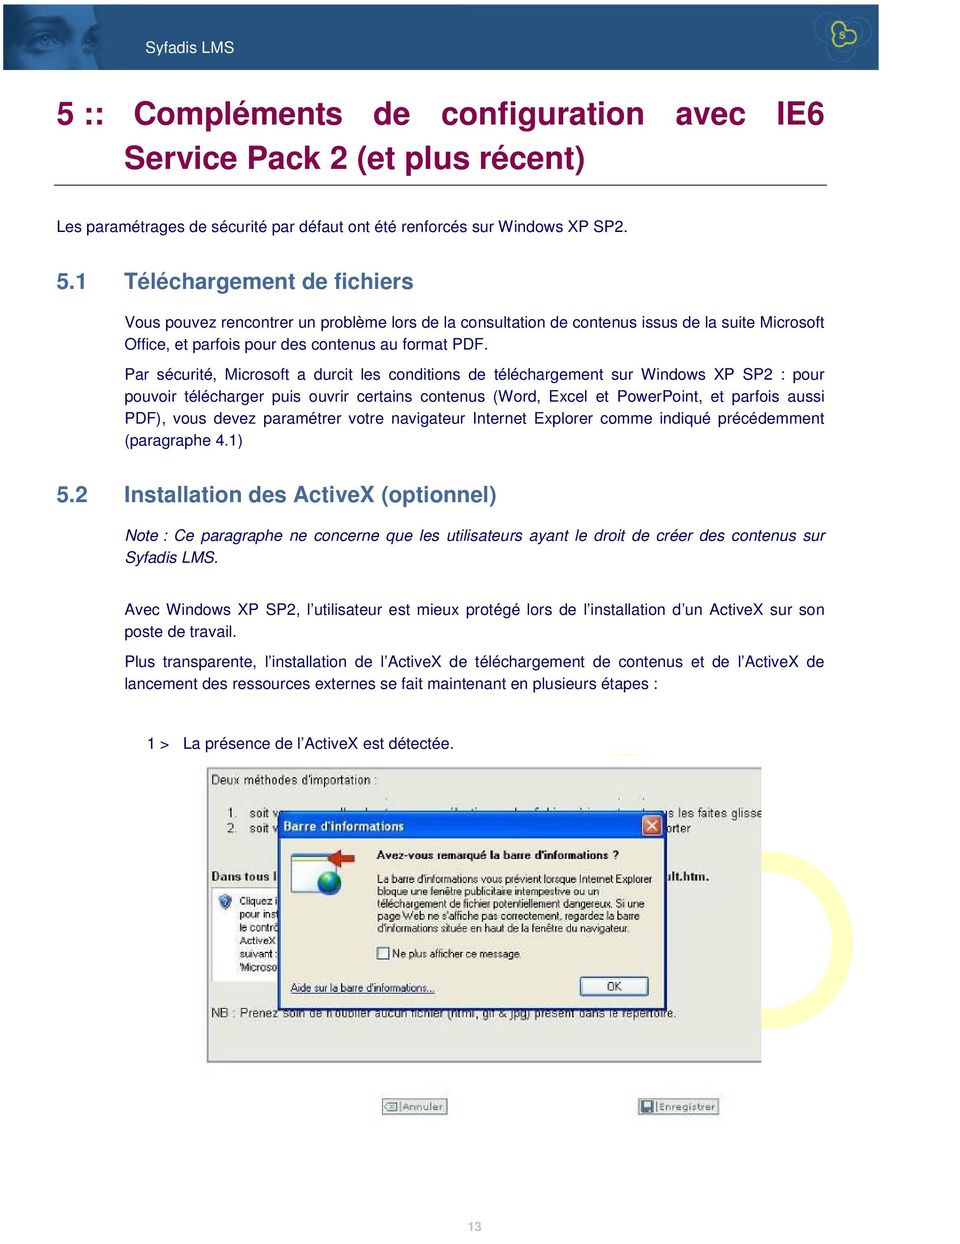 Par sécurité, Microsoft a durcit les conditions de téléchargement sur Windows XP SP2 : pour pouvoir télécharger puis ouvrir certains contenus (Word, Excel et PowerPoint, et parfois aussi PDF), vous